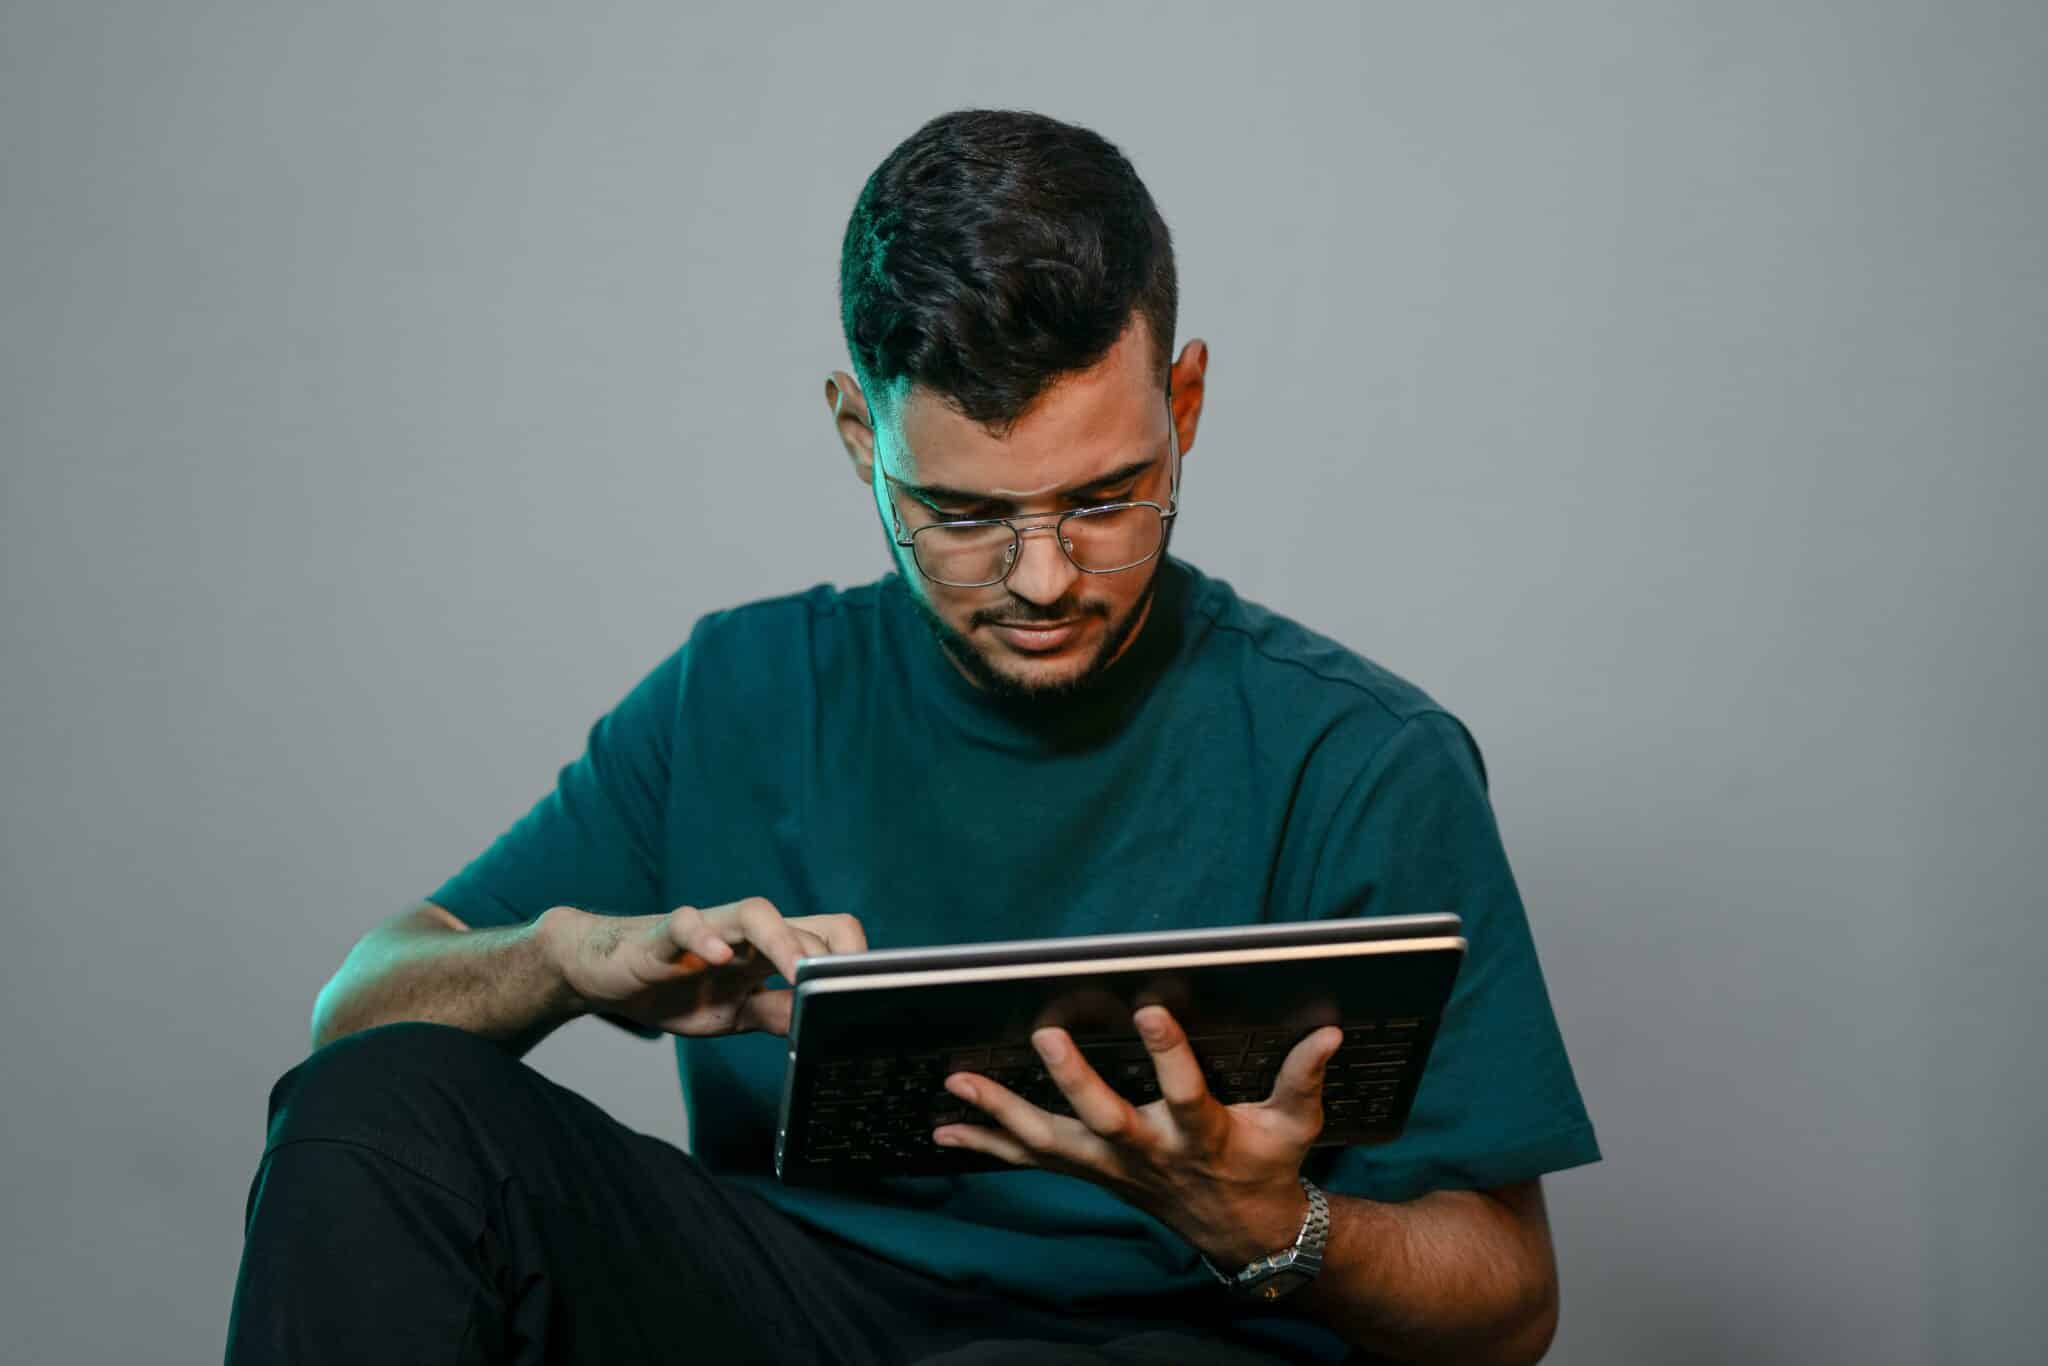 Ein Mann im dunkelgrünen T-Shirt benutzt ein Tablet.